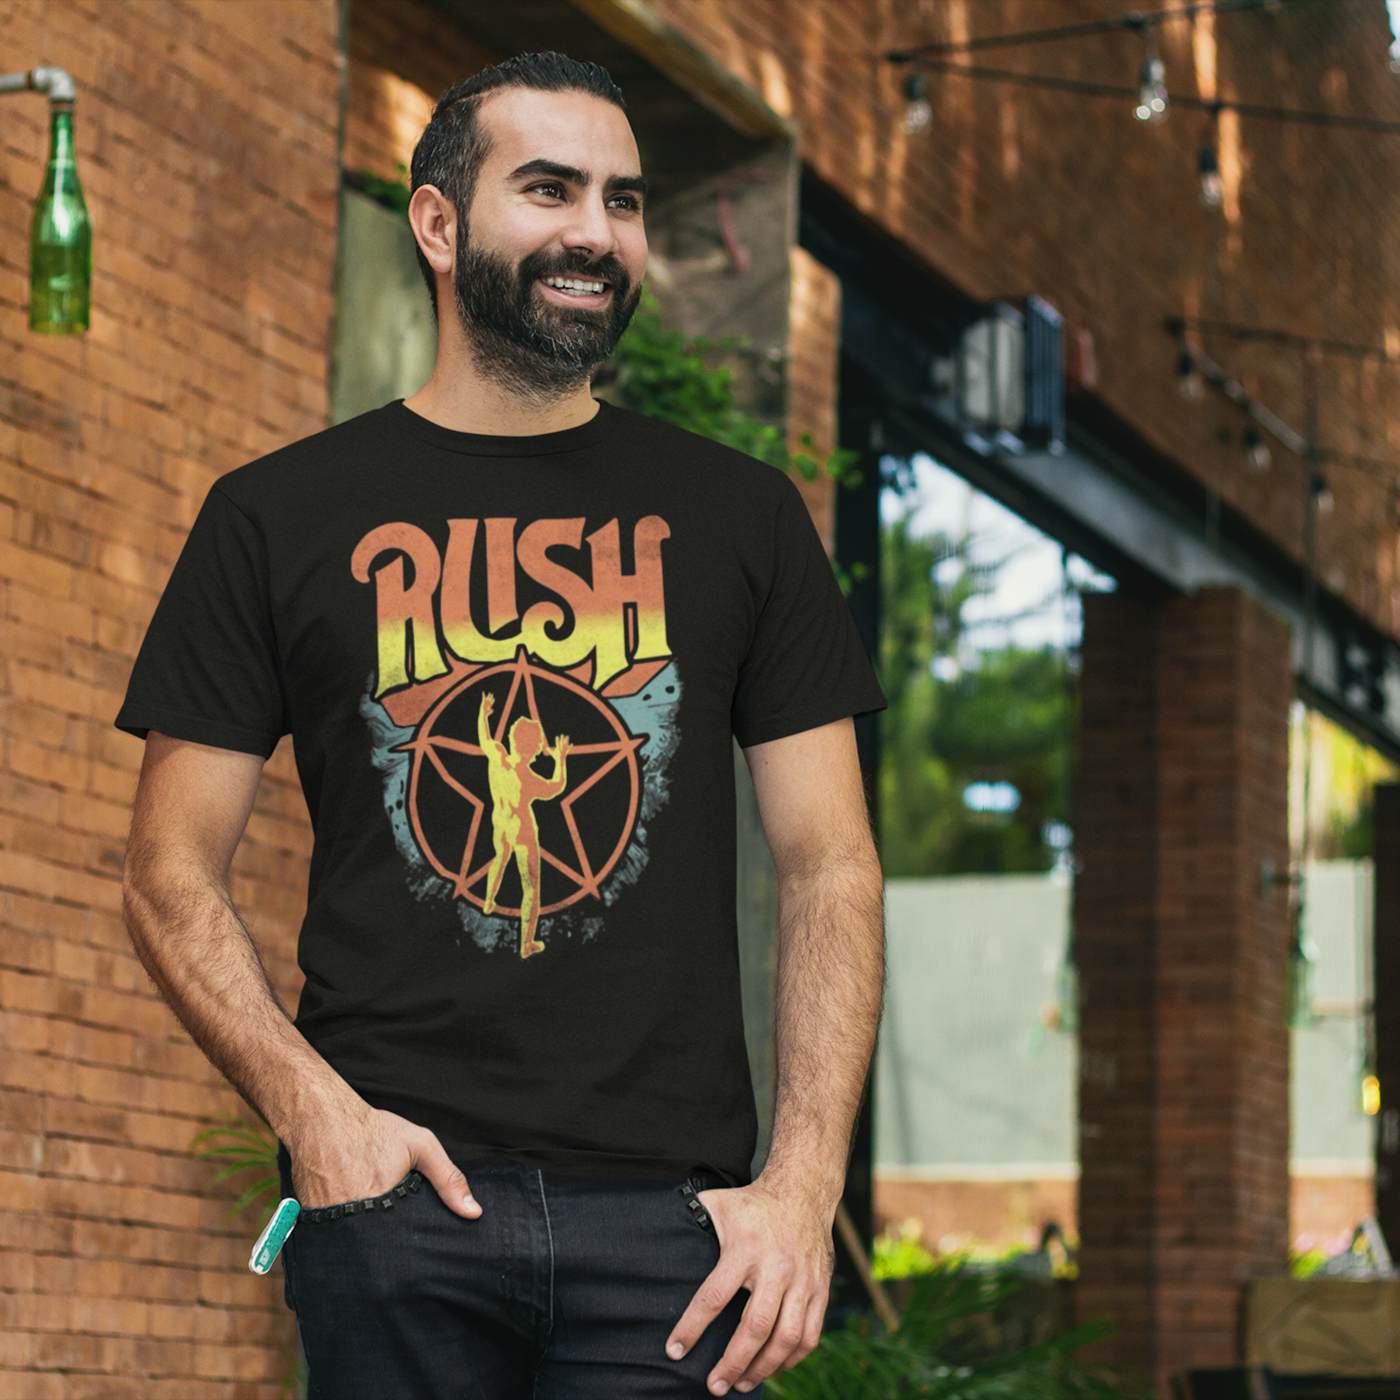 Starman T-Shirt Rush | Rush 2112 T-Shirt